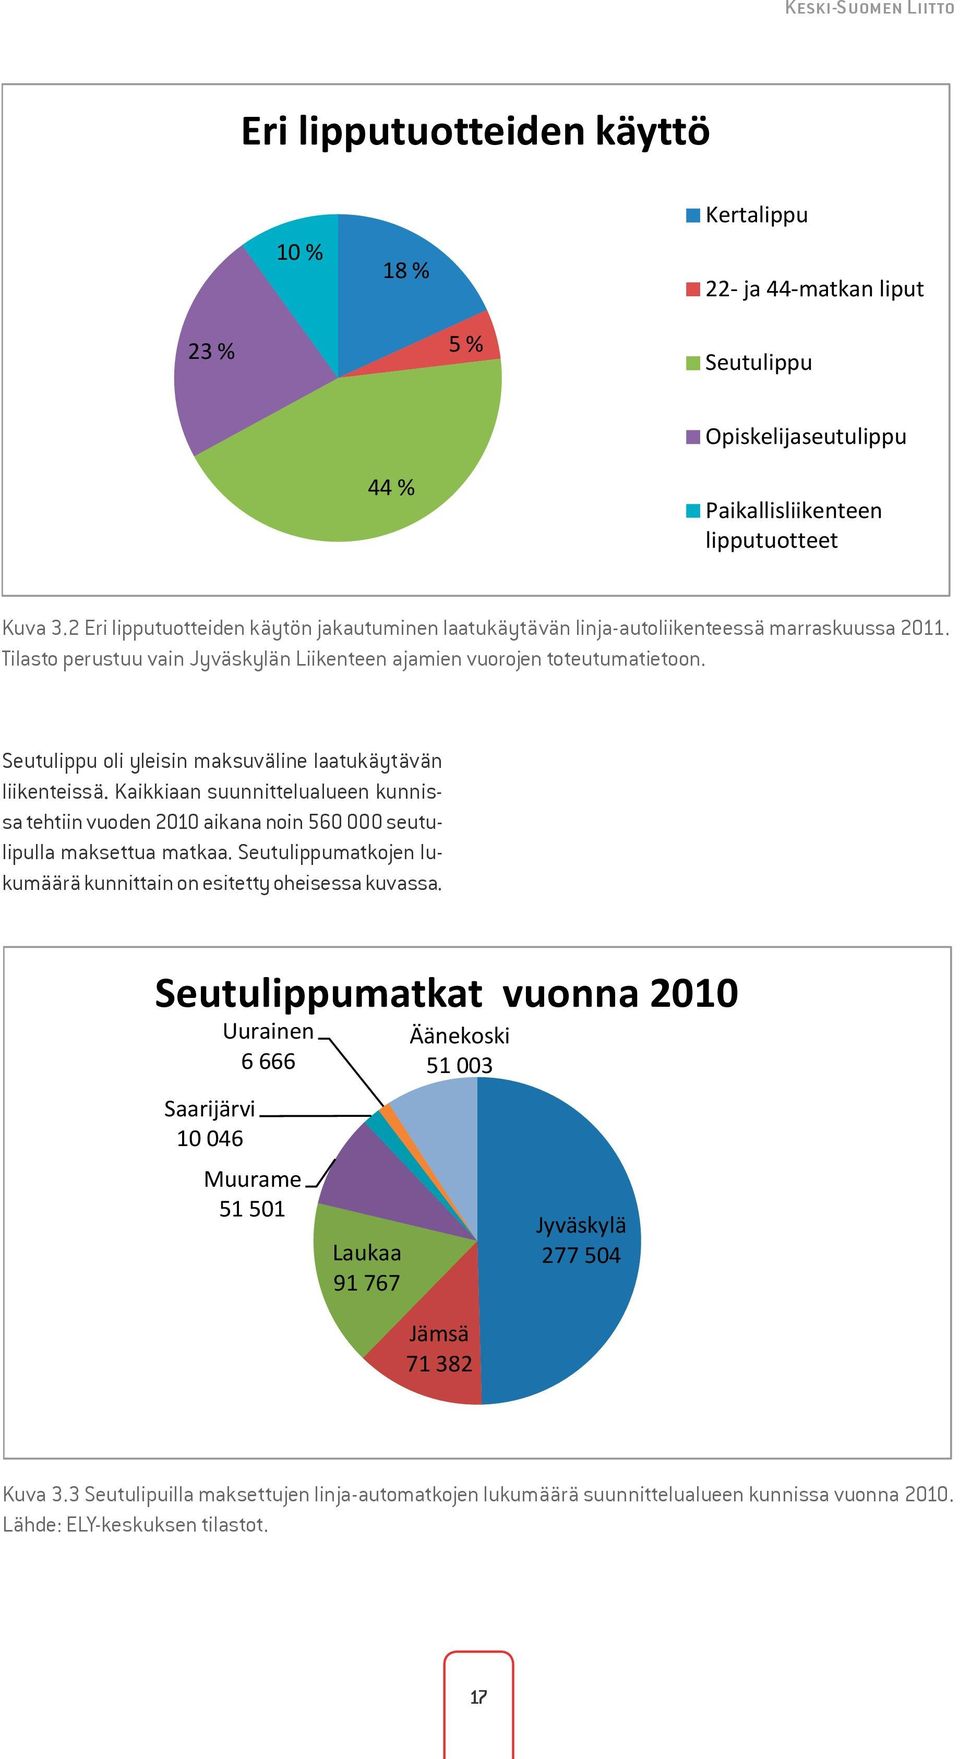 Tilasto perustuu vain Jyväskylän Liikenteen ajamien vuorojen toteutumatietoon. Kuva 3.2 44 % Paikallisliikenteen lipputuotteet Seutulippu oli yleisin maksuväline laatukäytävän liikenteissä.